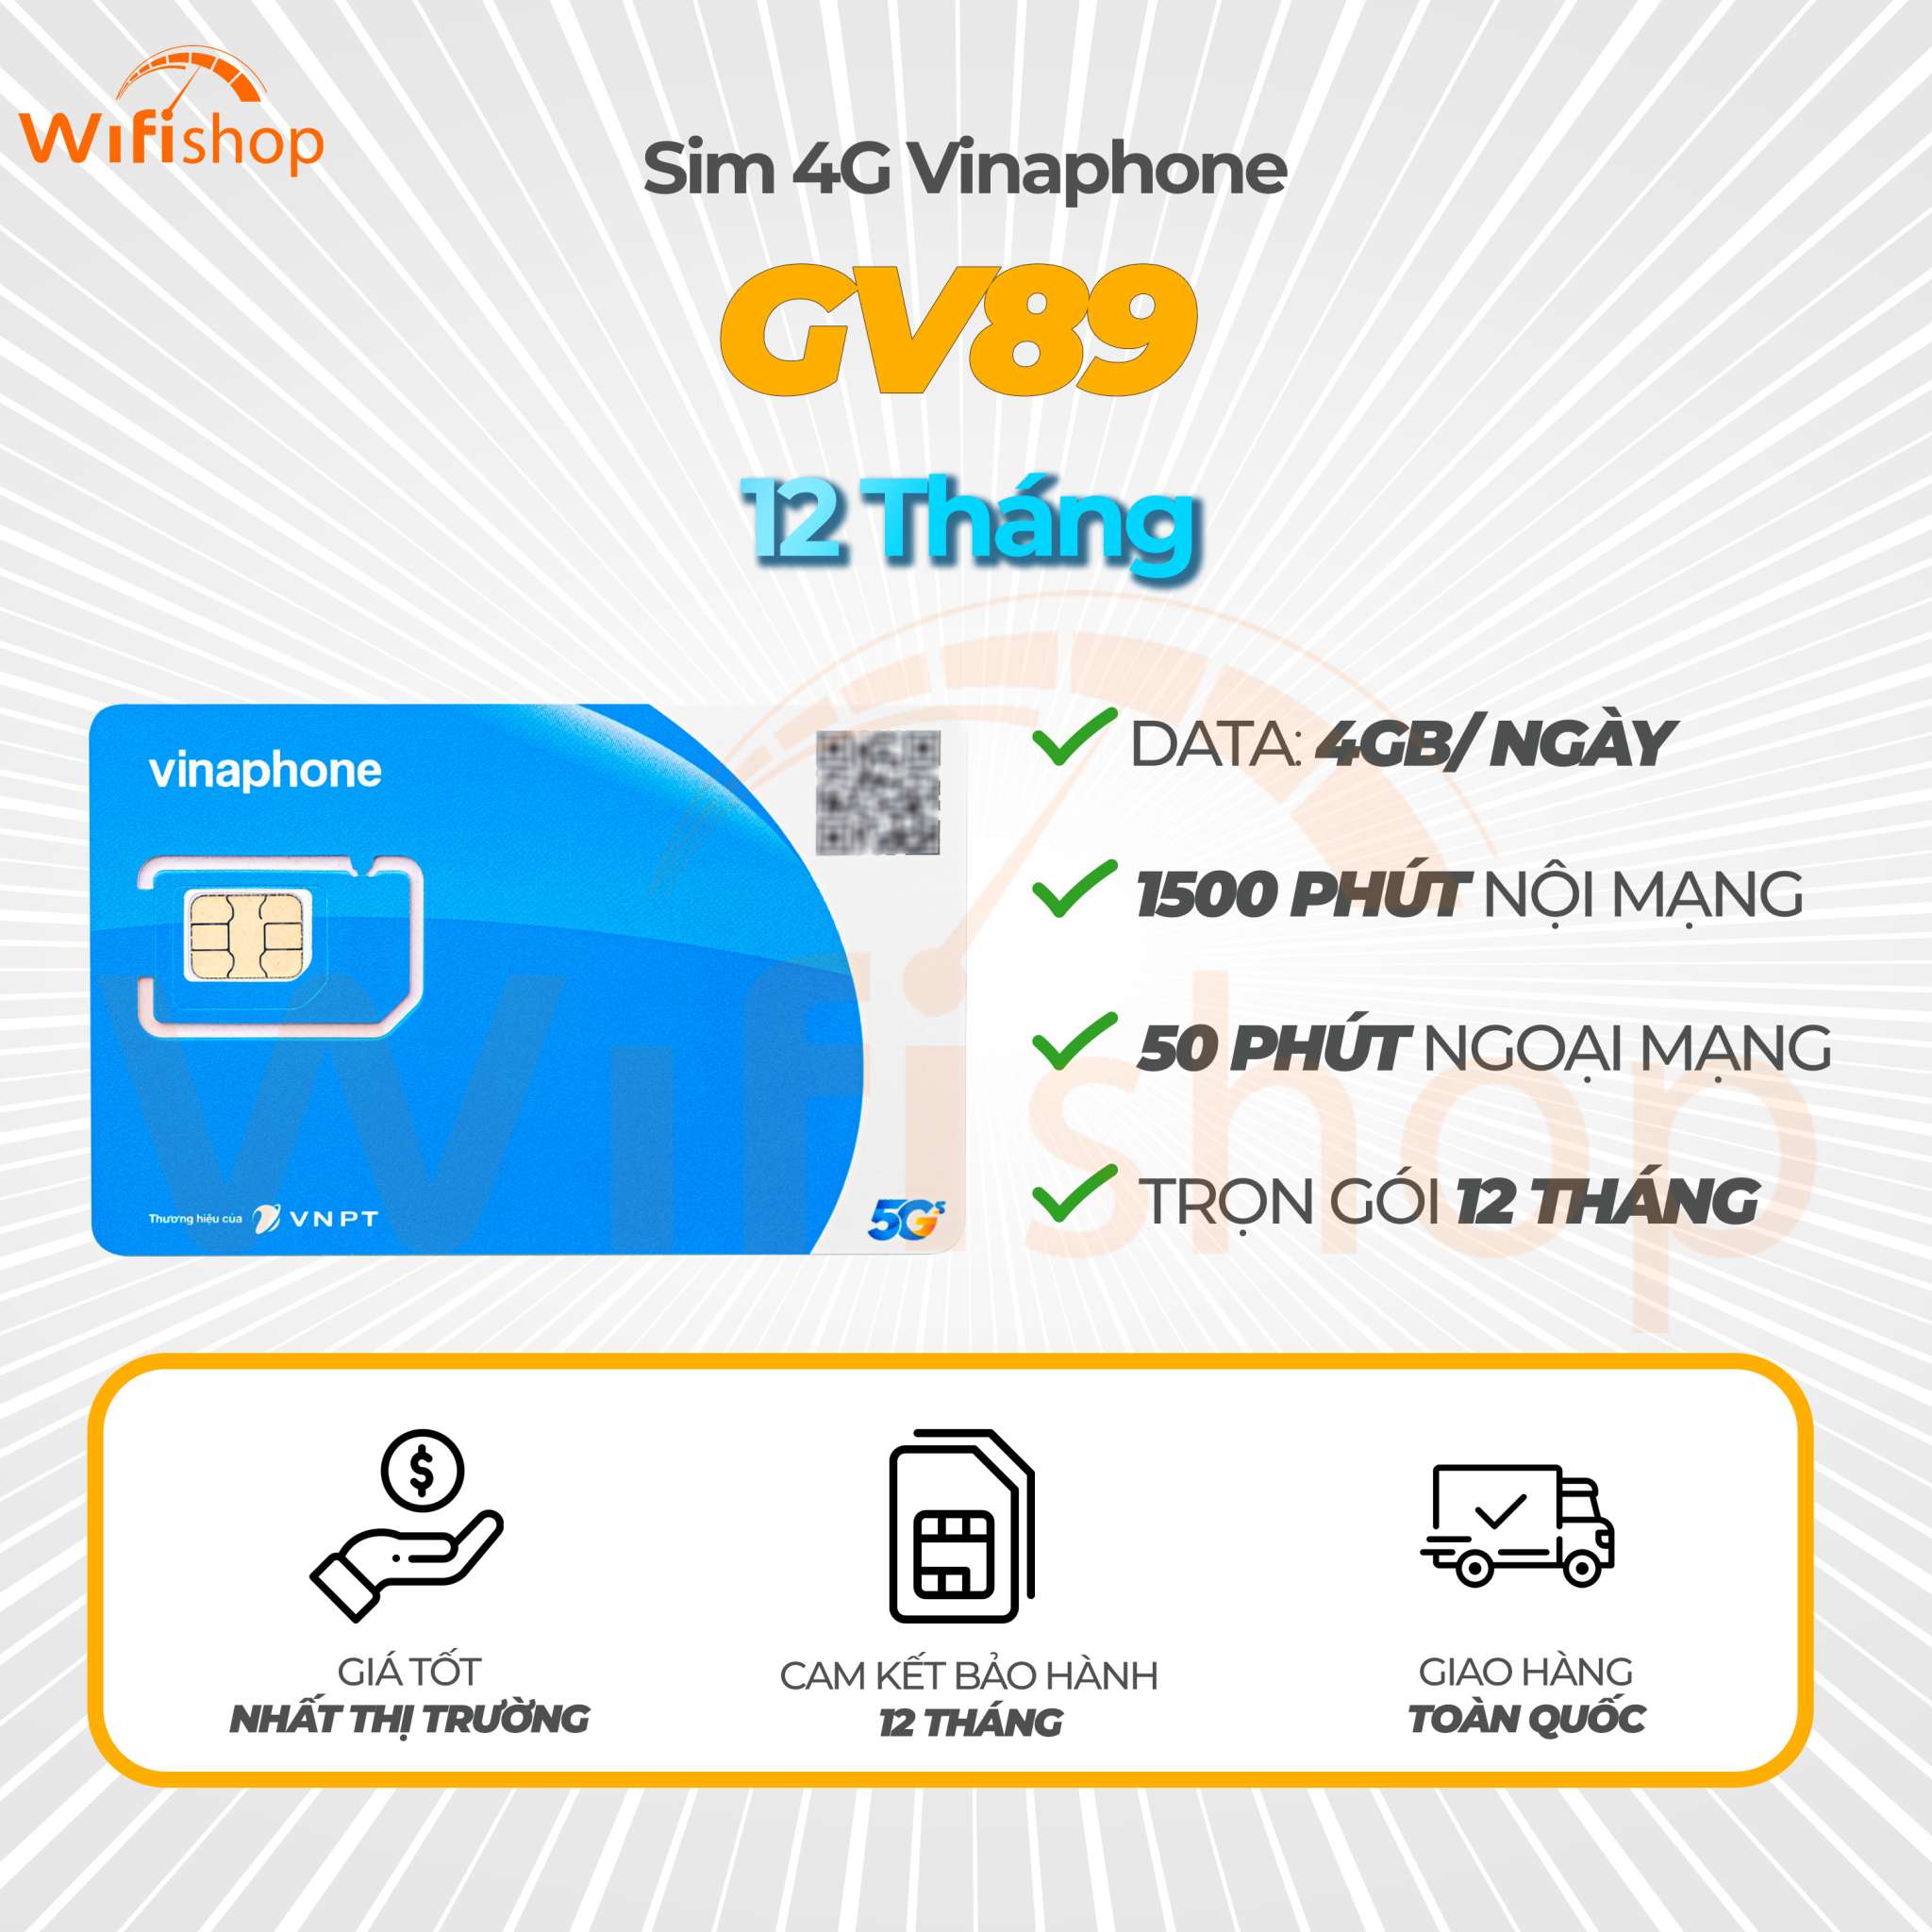 Sim 4G Vinaphone GV89 ưu đãi 4GB/ngày và miễn phí gọi thoại, 12 tháng không nạp tiền